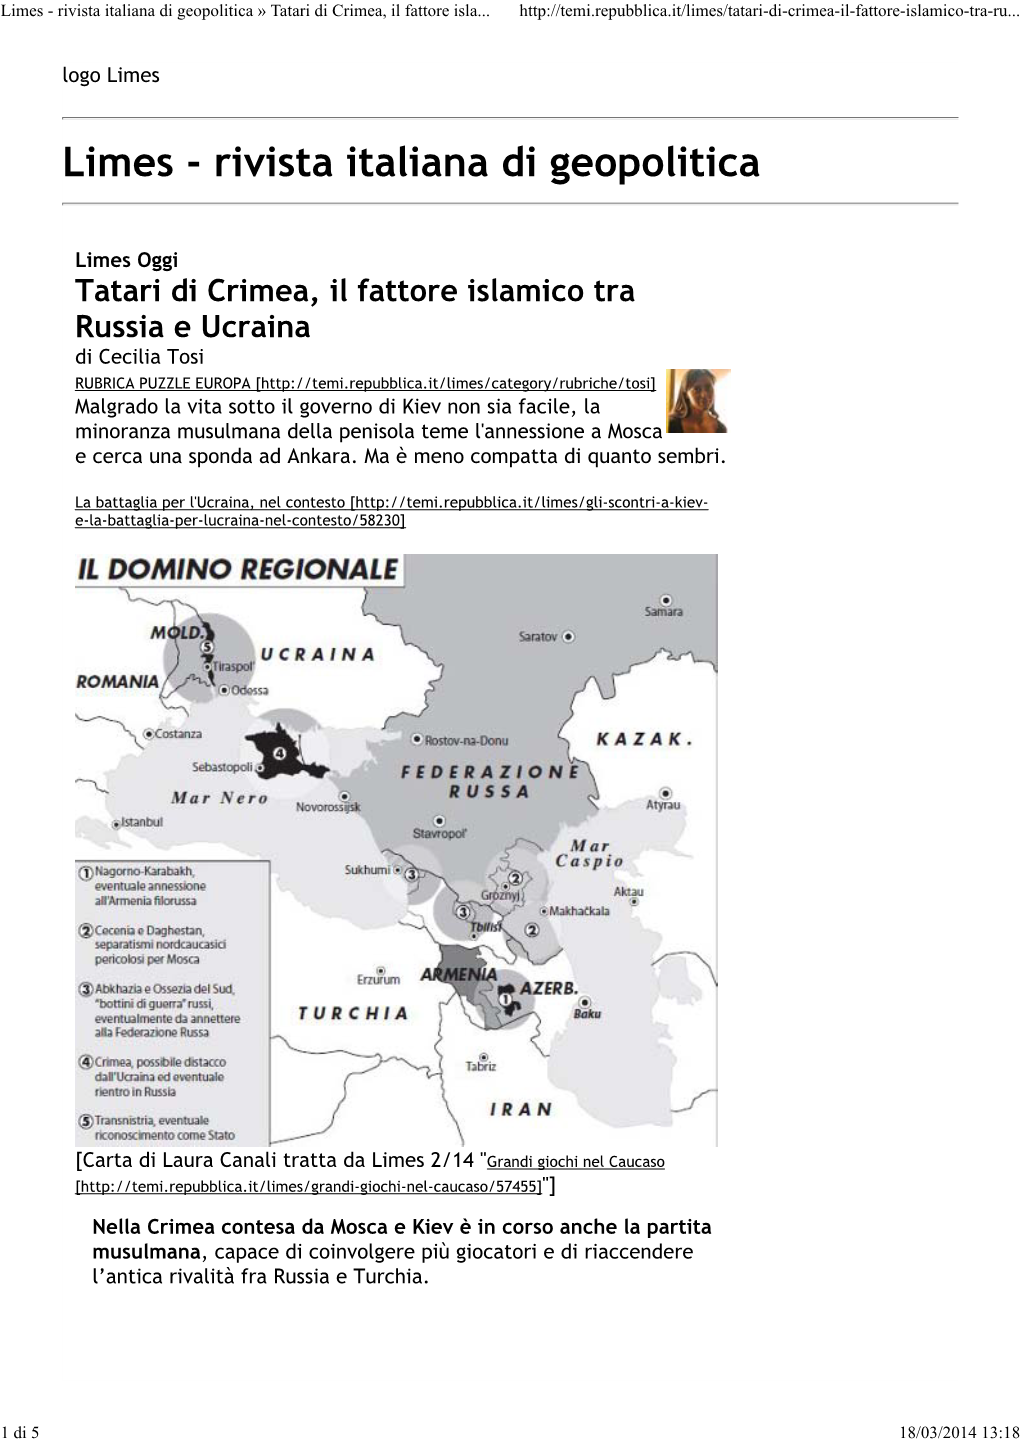 Tatari Di Crimea, Il Fattore Islamico Tra Russia E Ucraina